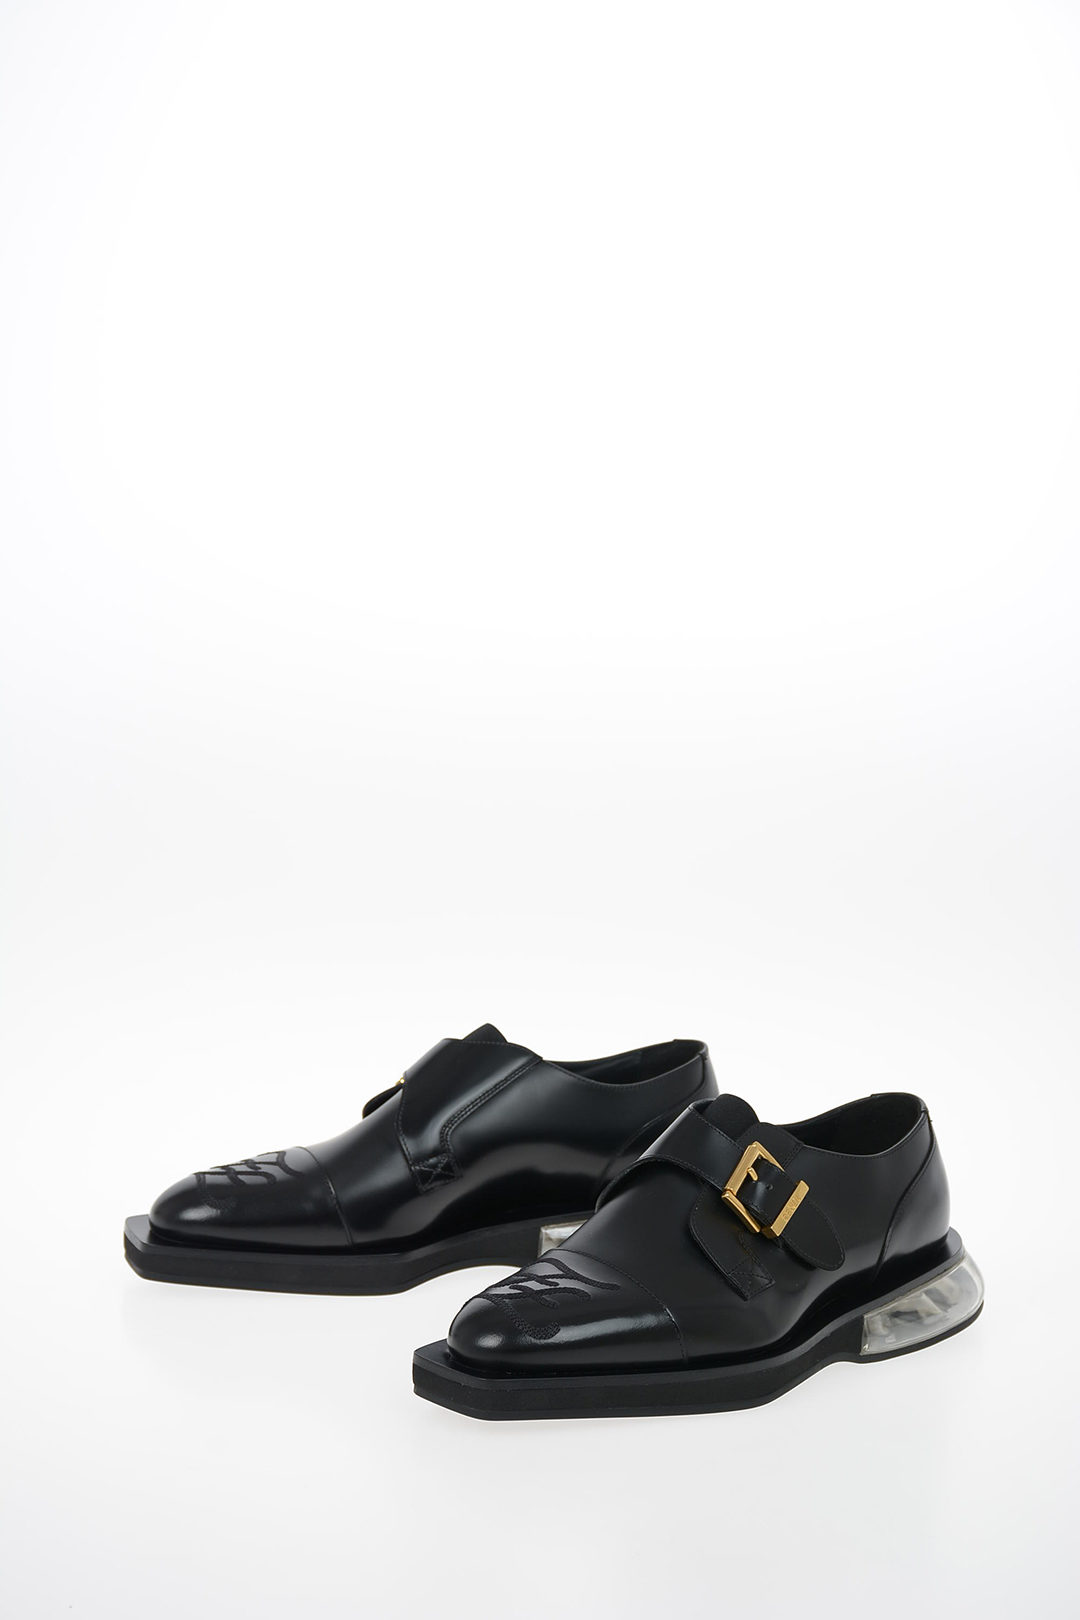 Fendi Leather Monk Shoes men - Glamood 